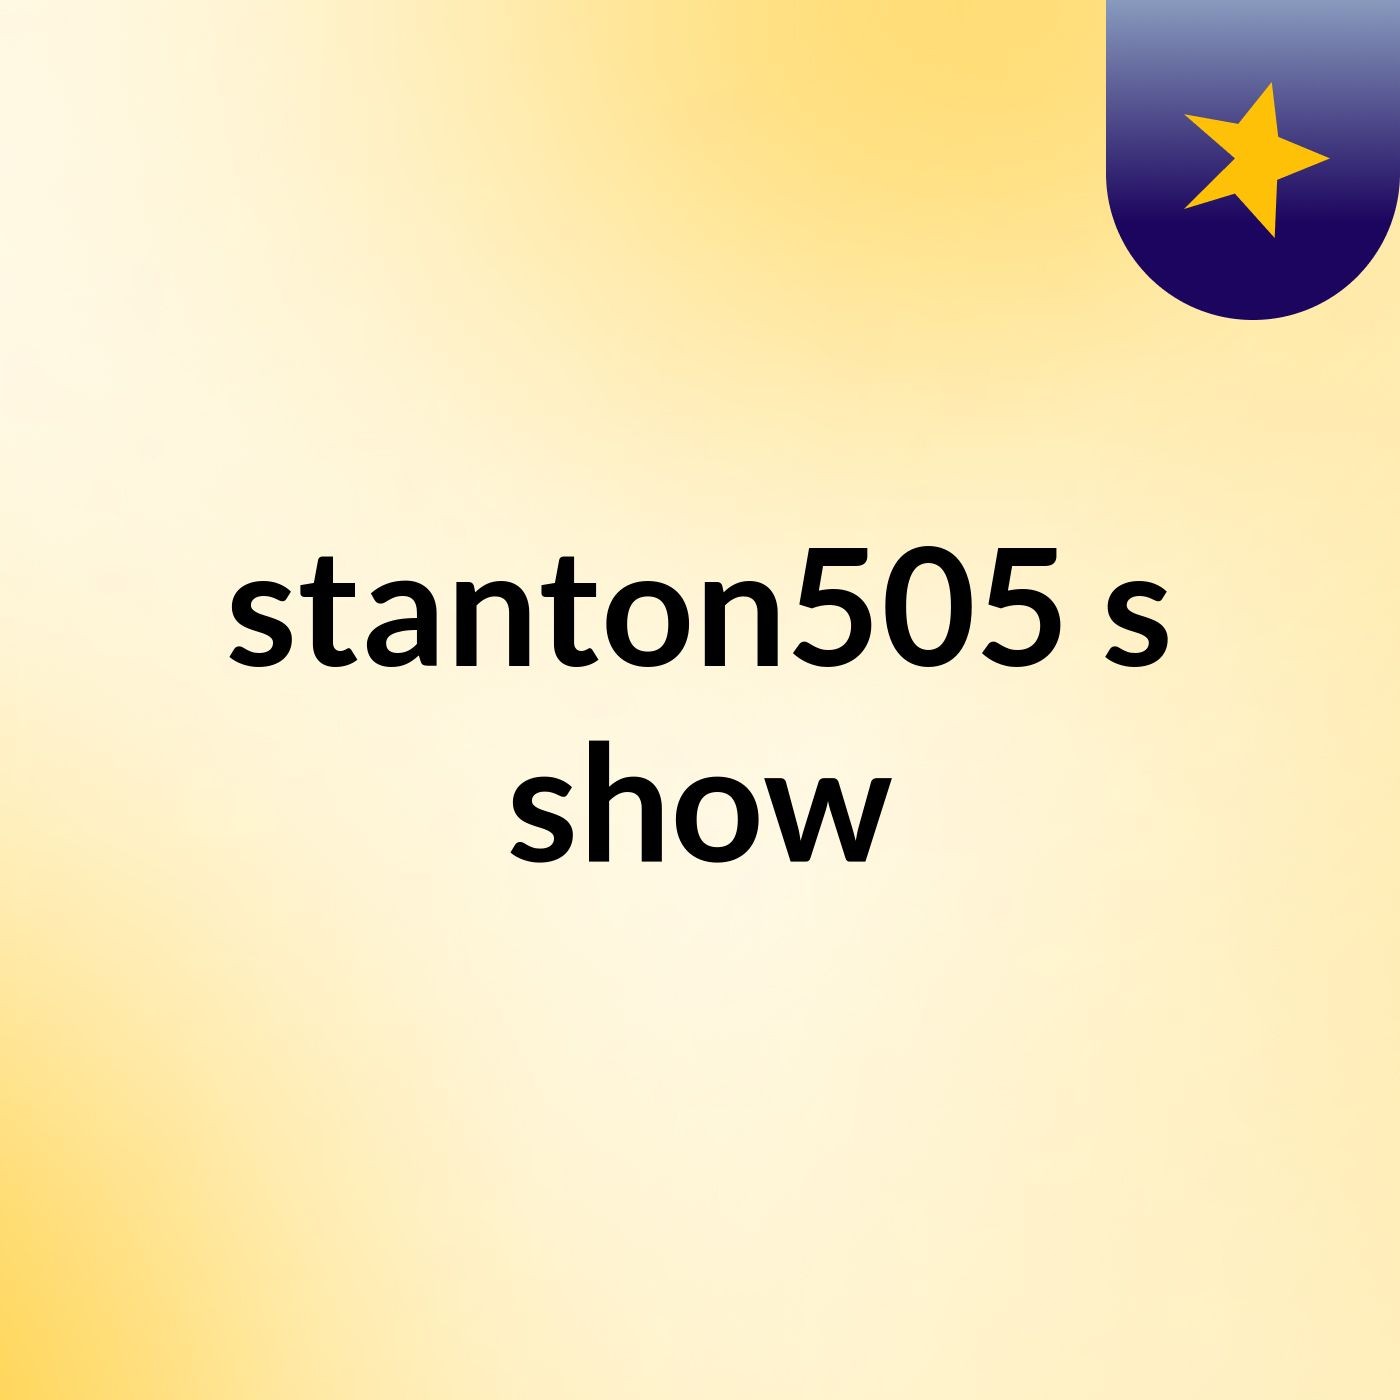 stanton505's show